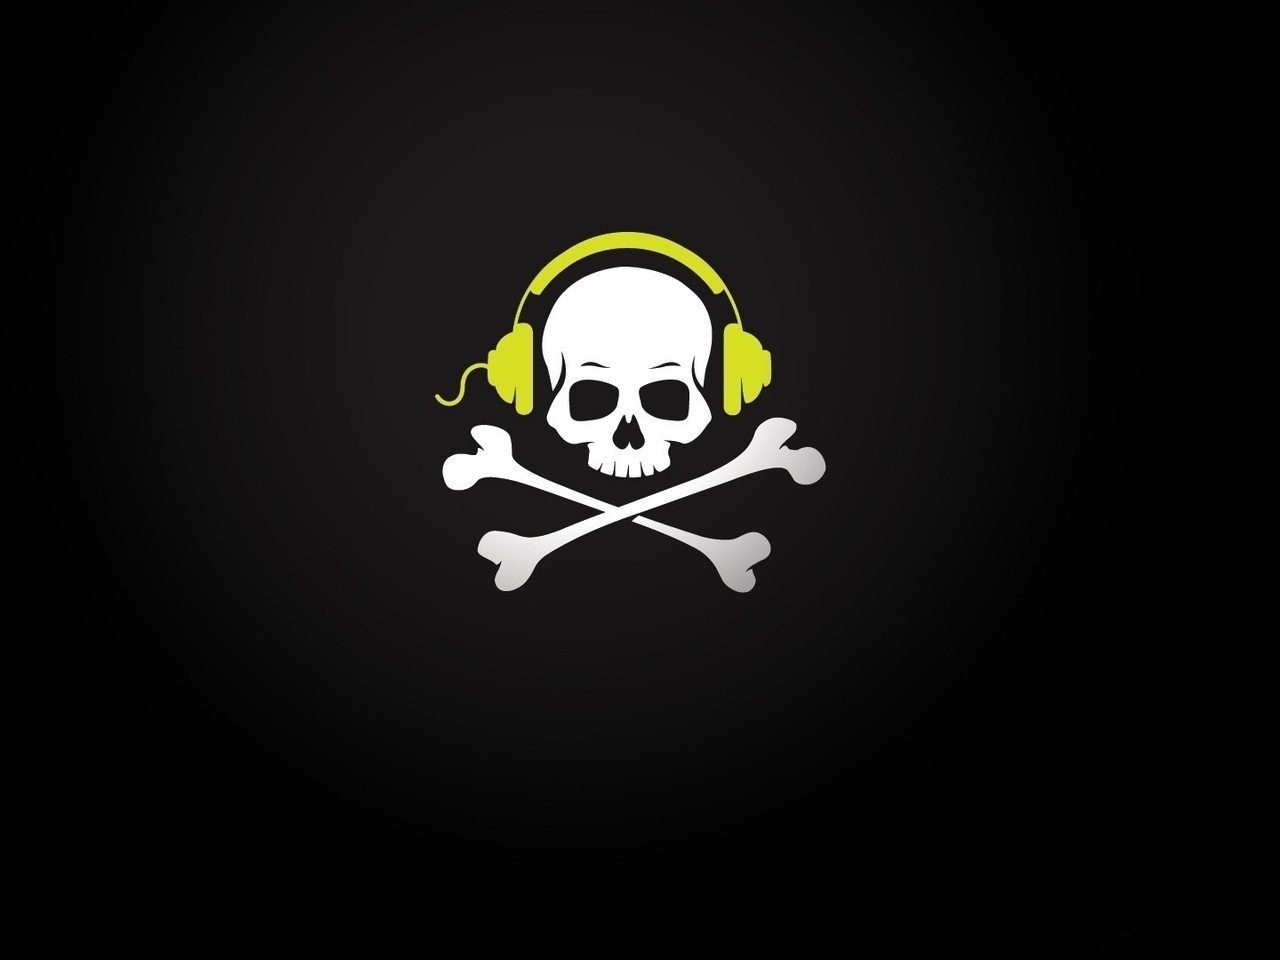 Image: Skull, bones, headphones, dark background